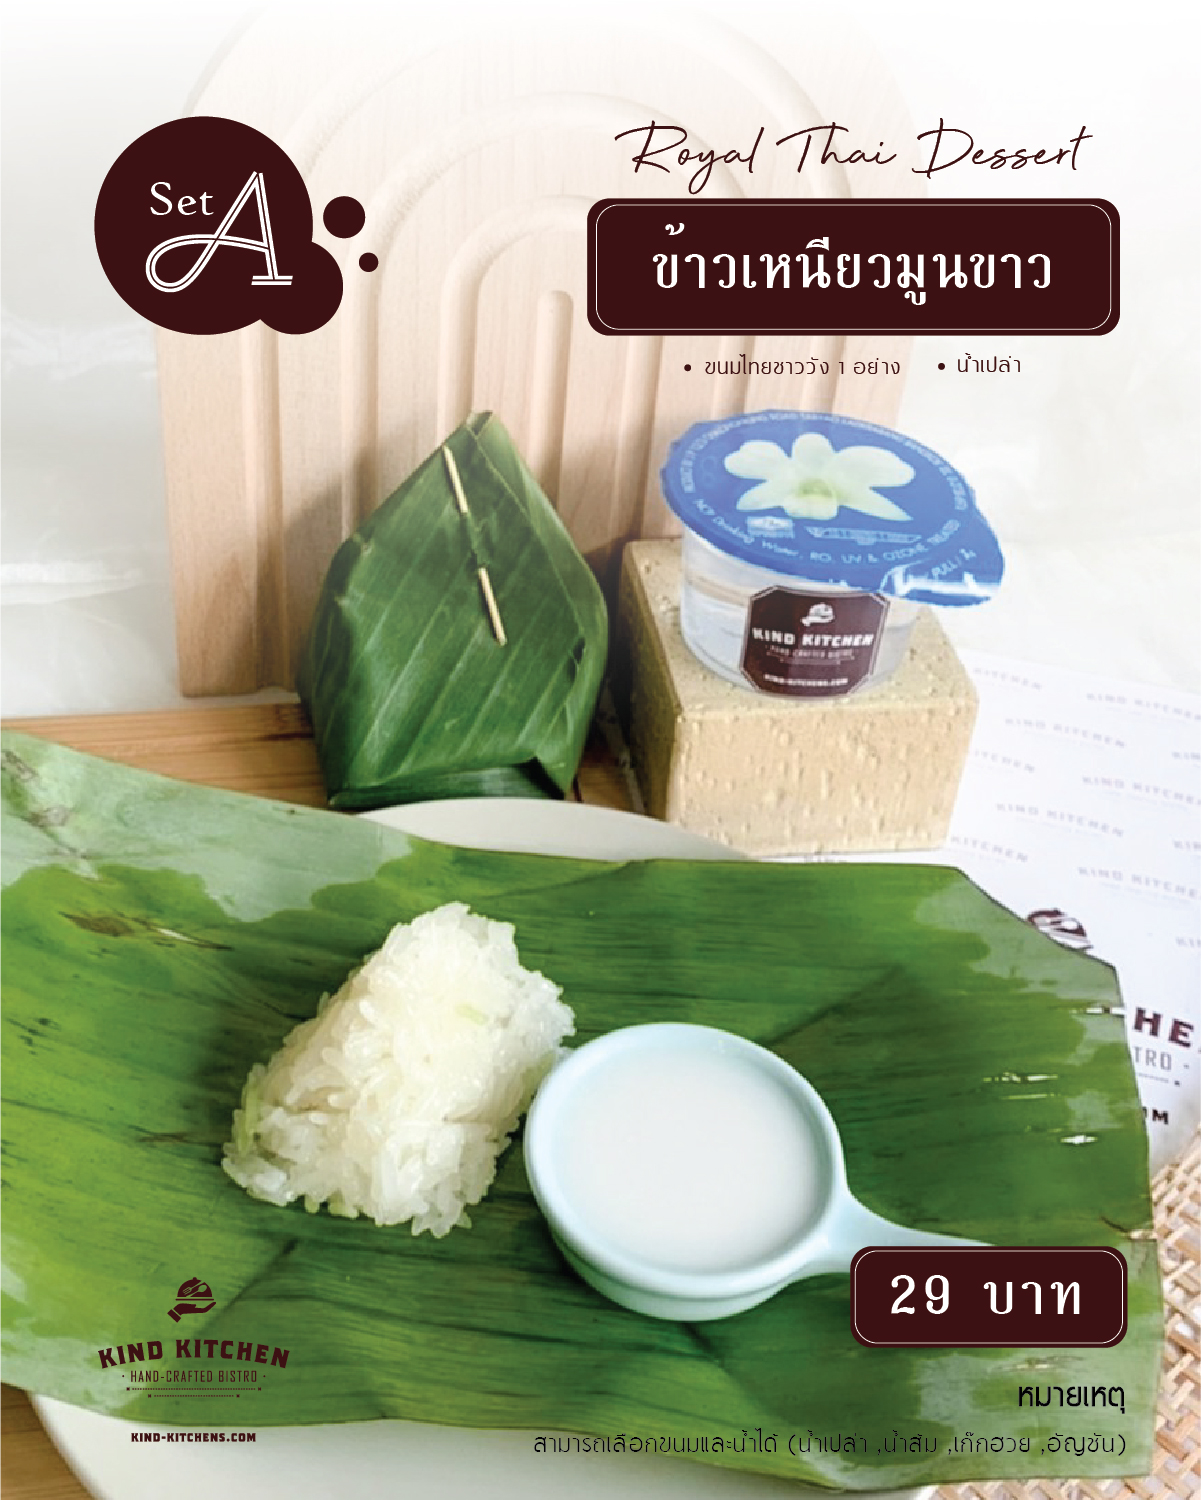 Royal Thai Dessert ข้าวเหนียวมูนขาวพร้อมน้ำ (เลือกได้) Set A